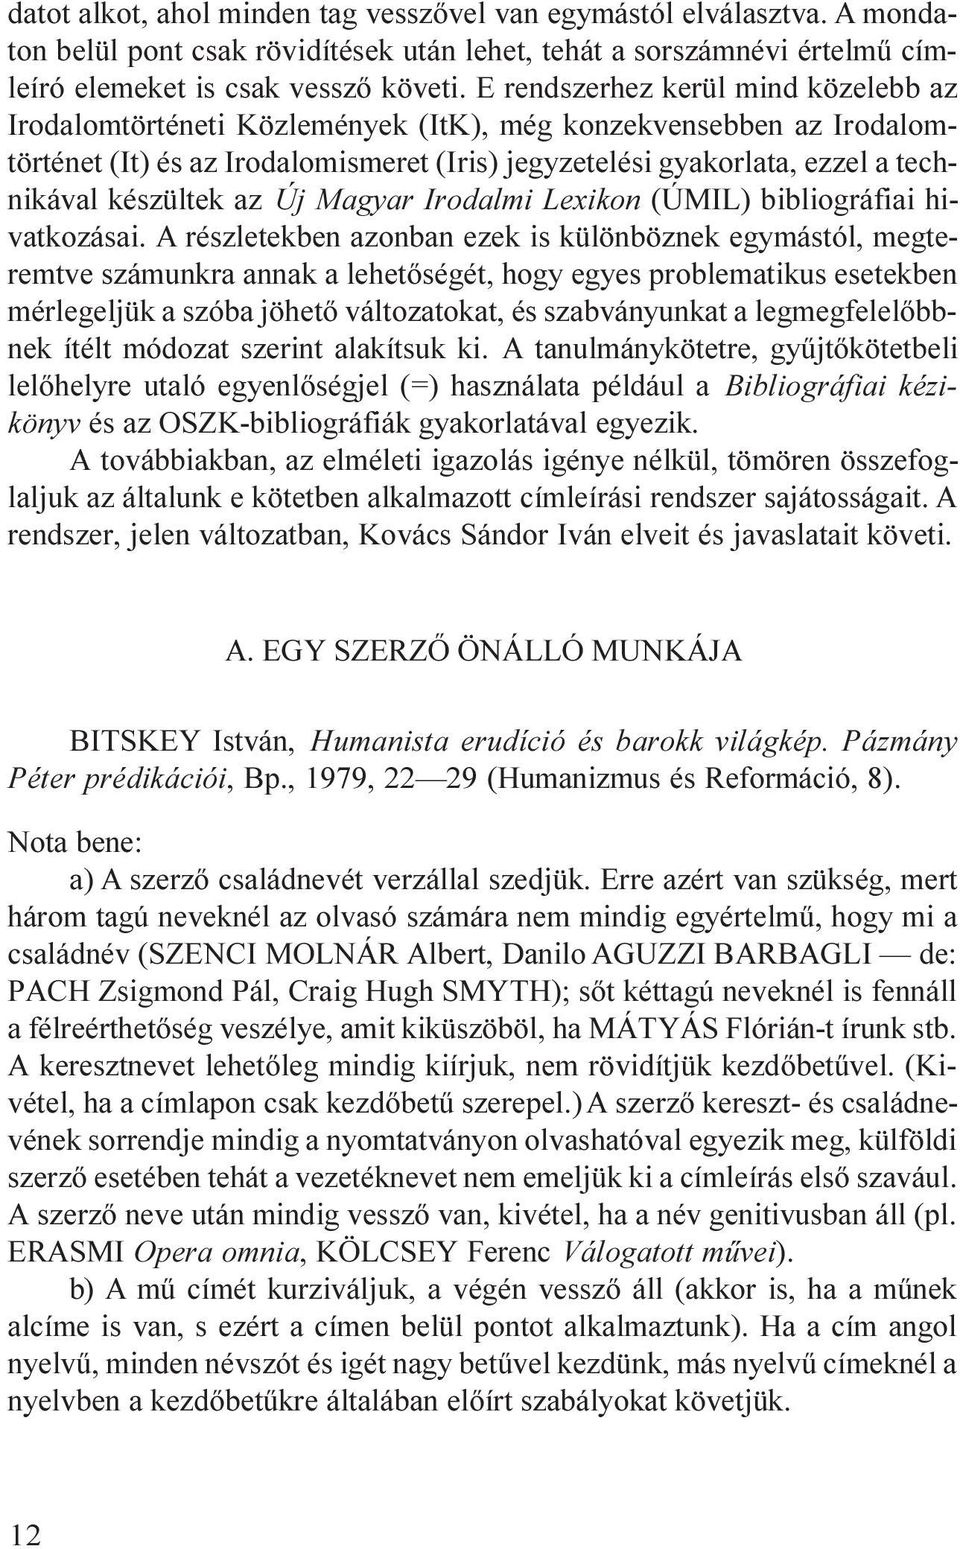 készültek az Új Magyar Irodalmi Lexikon (ÚMIL) bibliográfiai hivatkozásai.